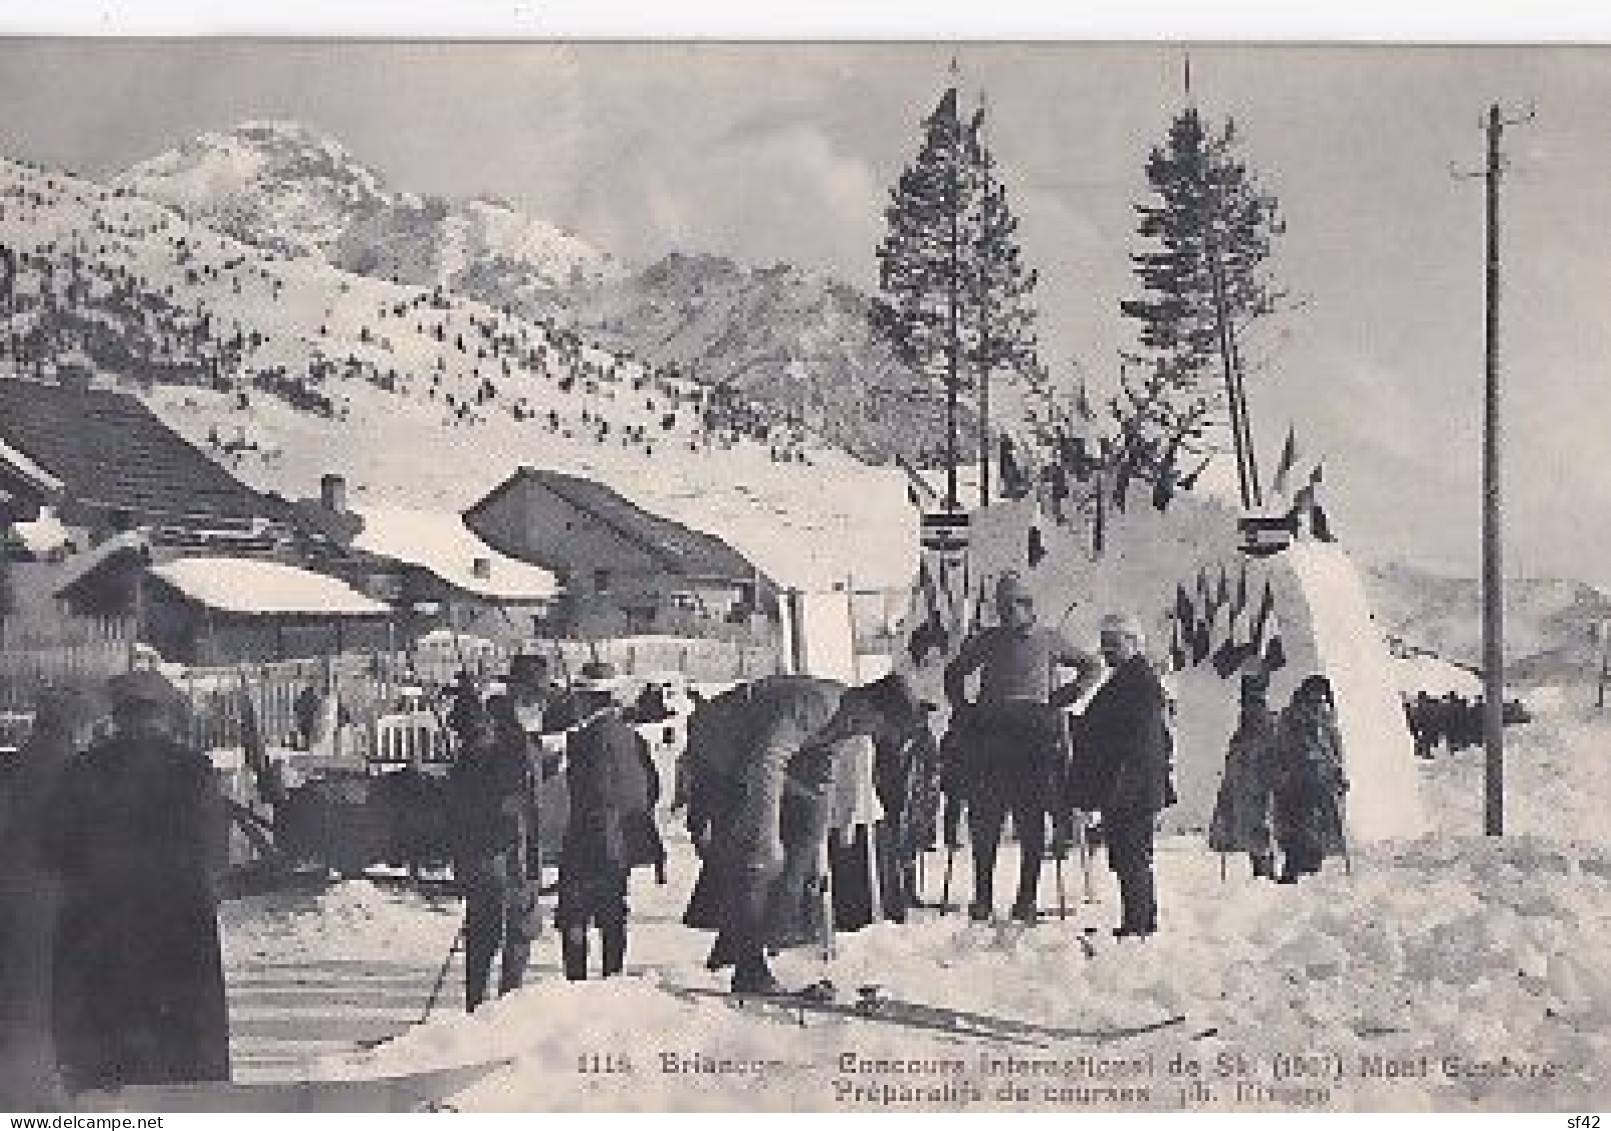 BRIANCON              CONCOURS INTERNATIONAL DE SKI  1907.  MONT GENEVRE          PREPARATIFS DE COURSES - Sports D'hiver